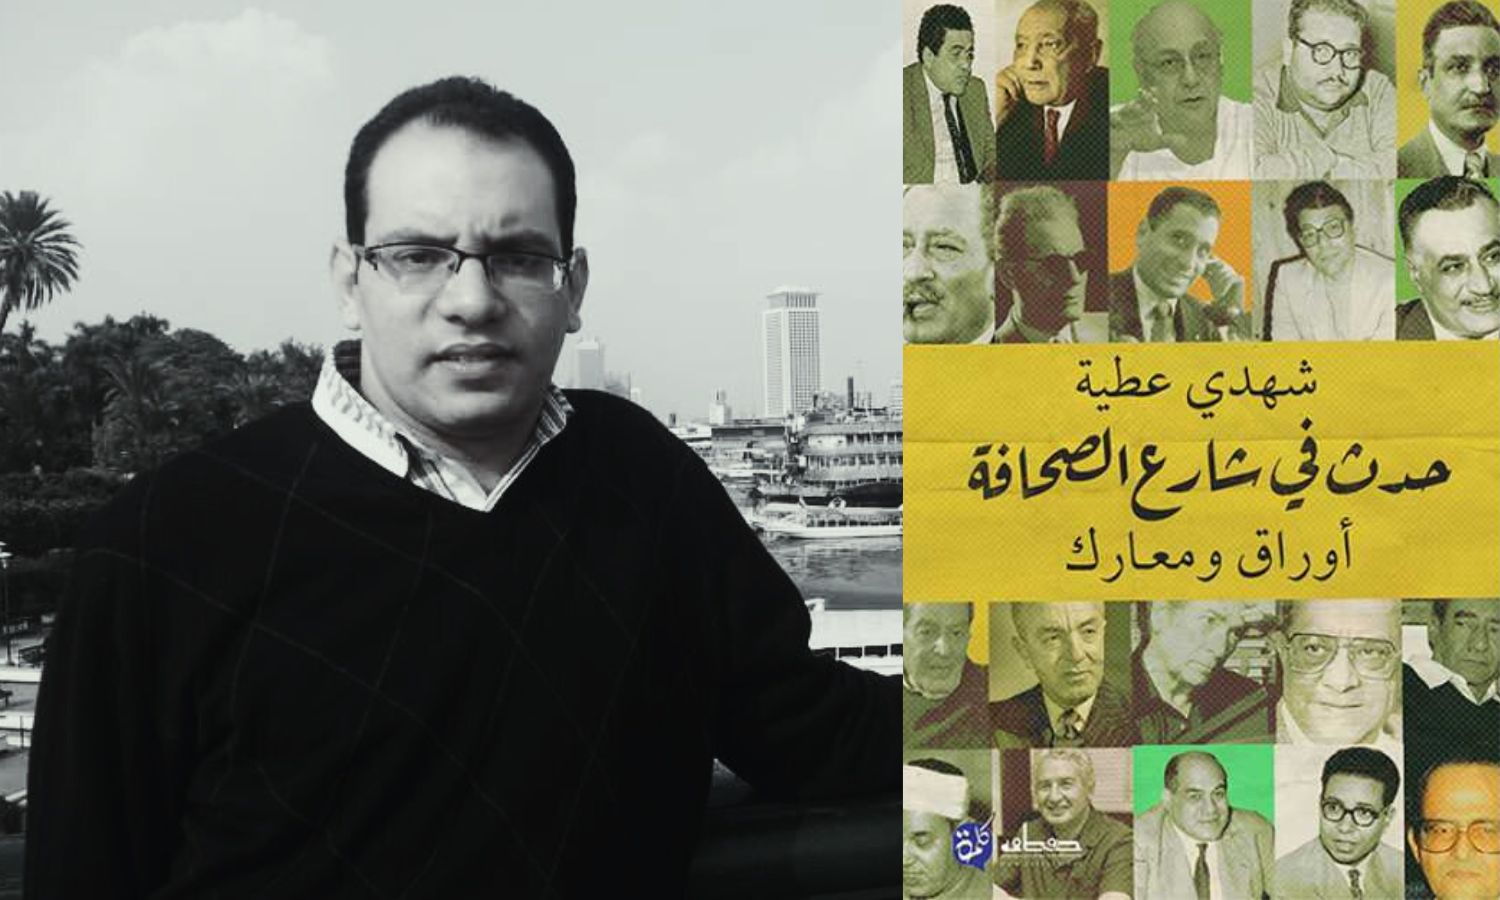 الكاتب شهدي عطية وغلاف كتاب حدث في شارع الصحافة (تعديل عنب بلدي)